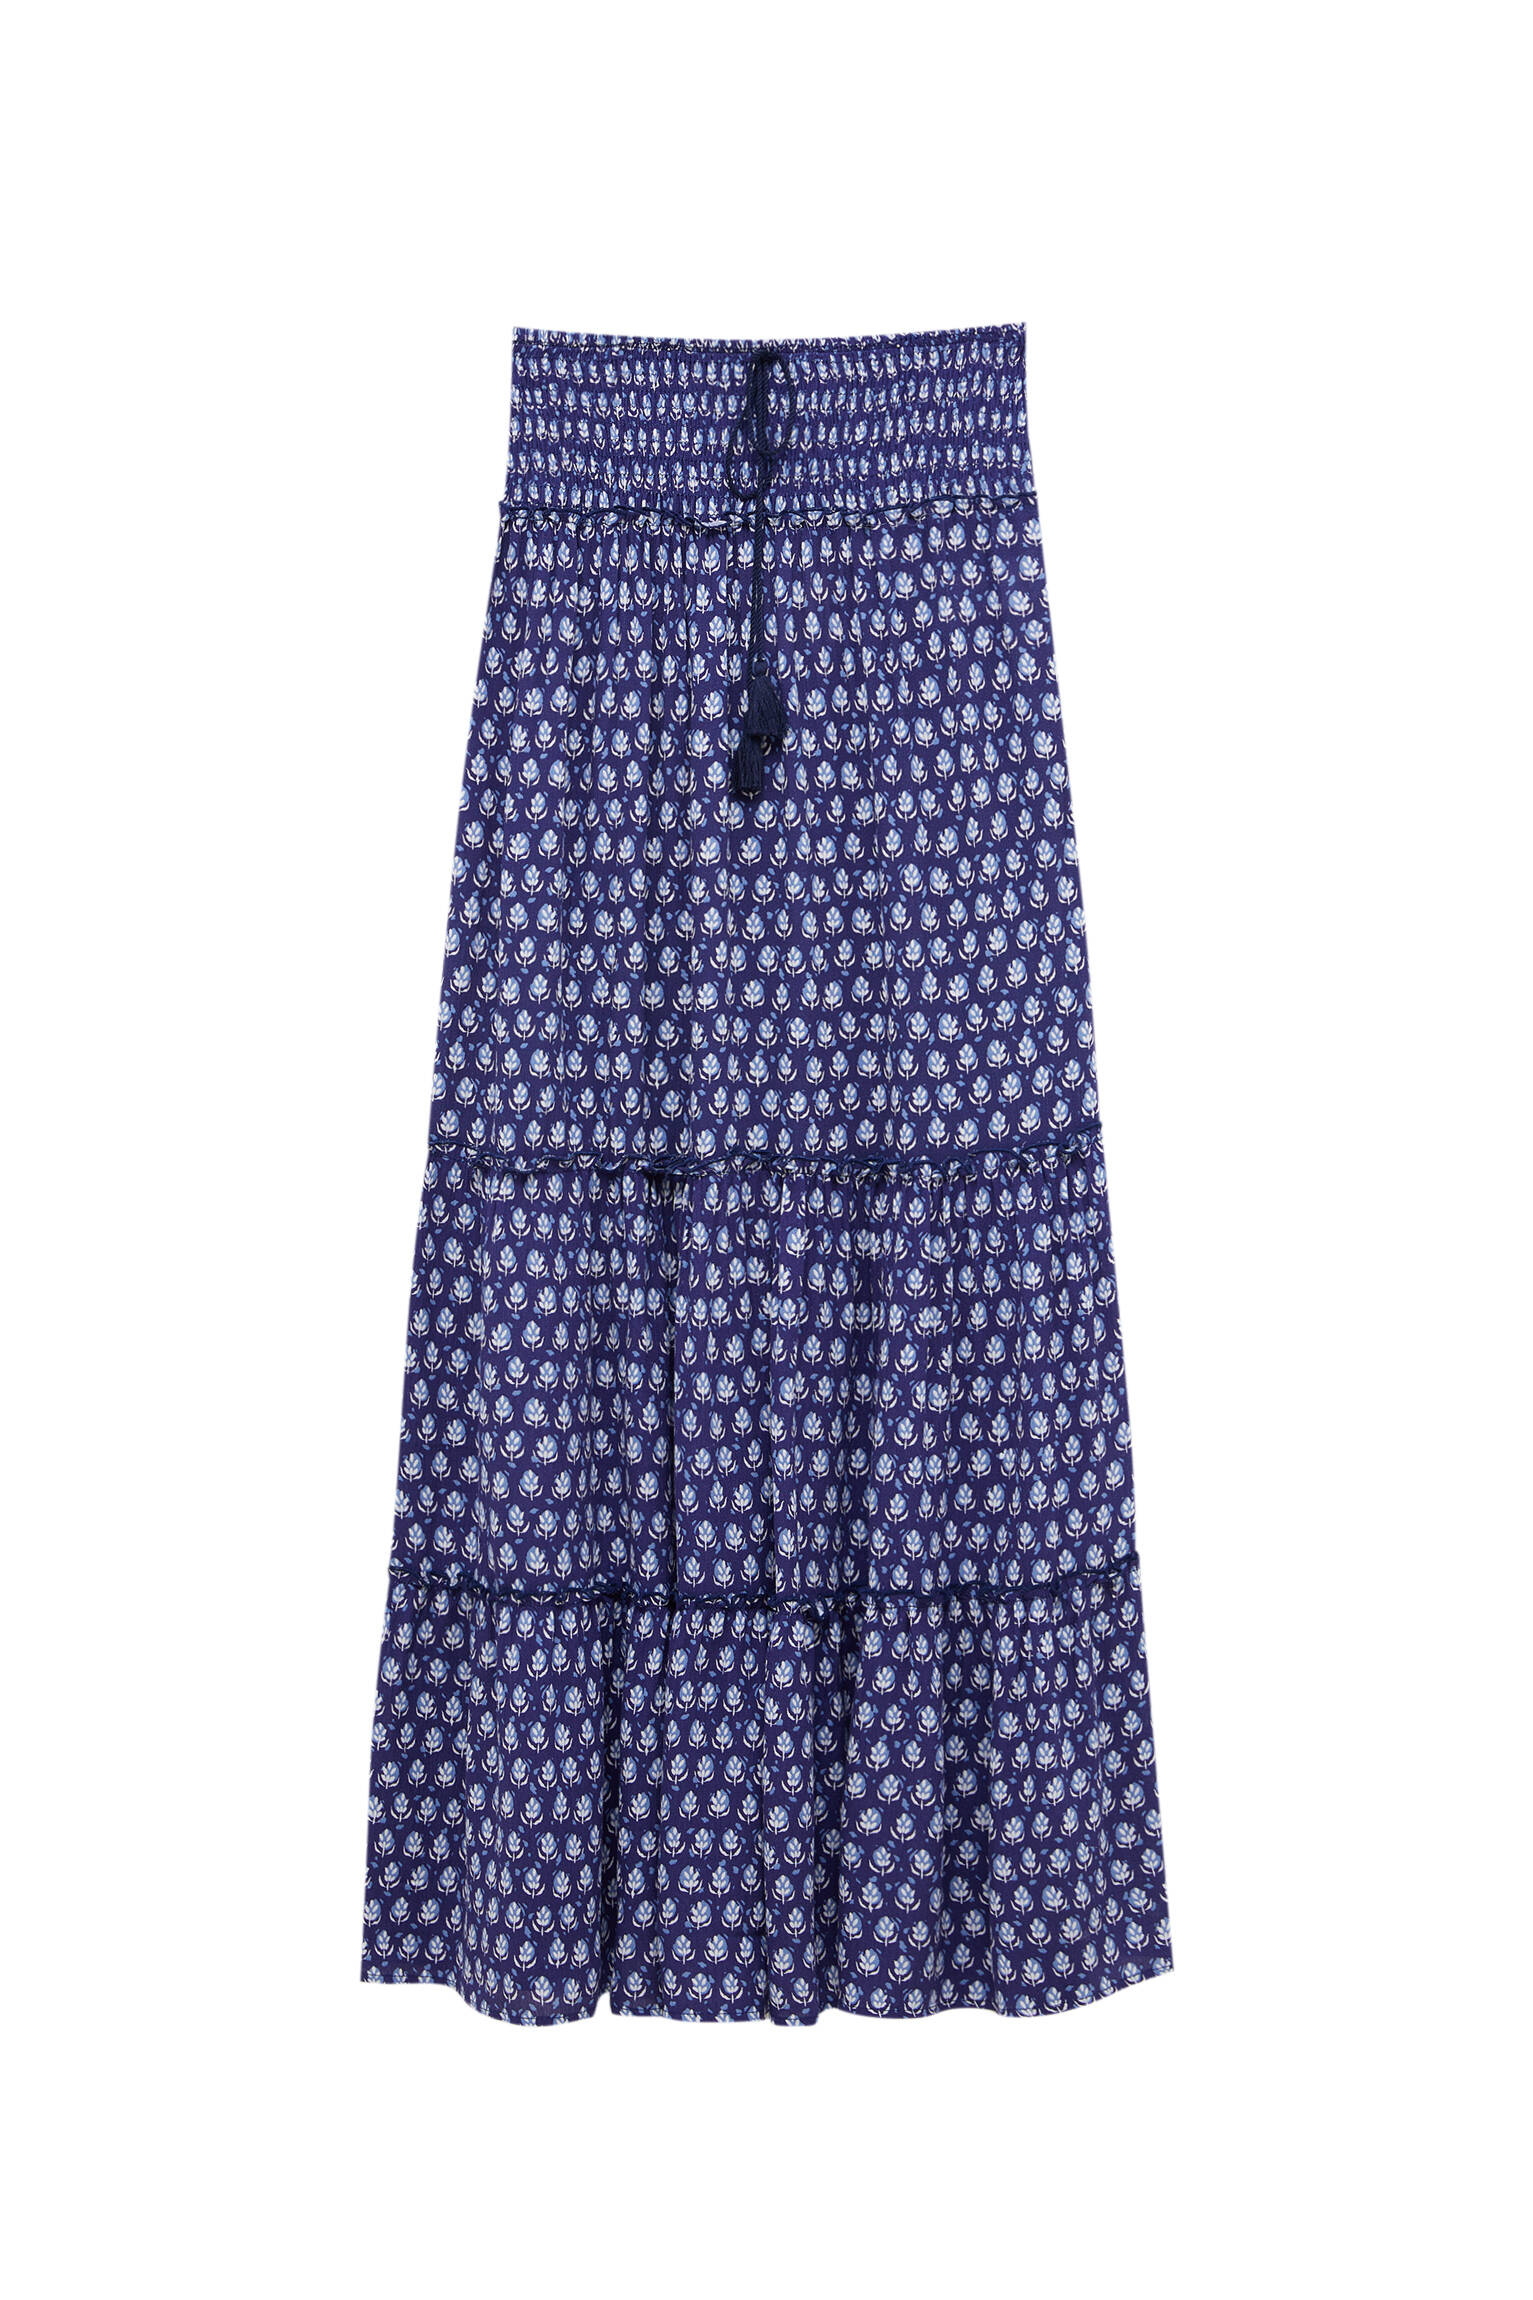 Pull&bear Femme Jupe Longue Fluide Imprimée à Taille élastique Avec Lien Et Volants. Bleu Sombre Xl